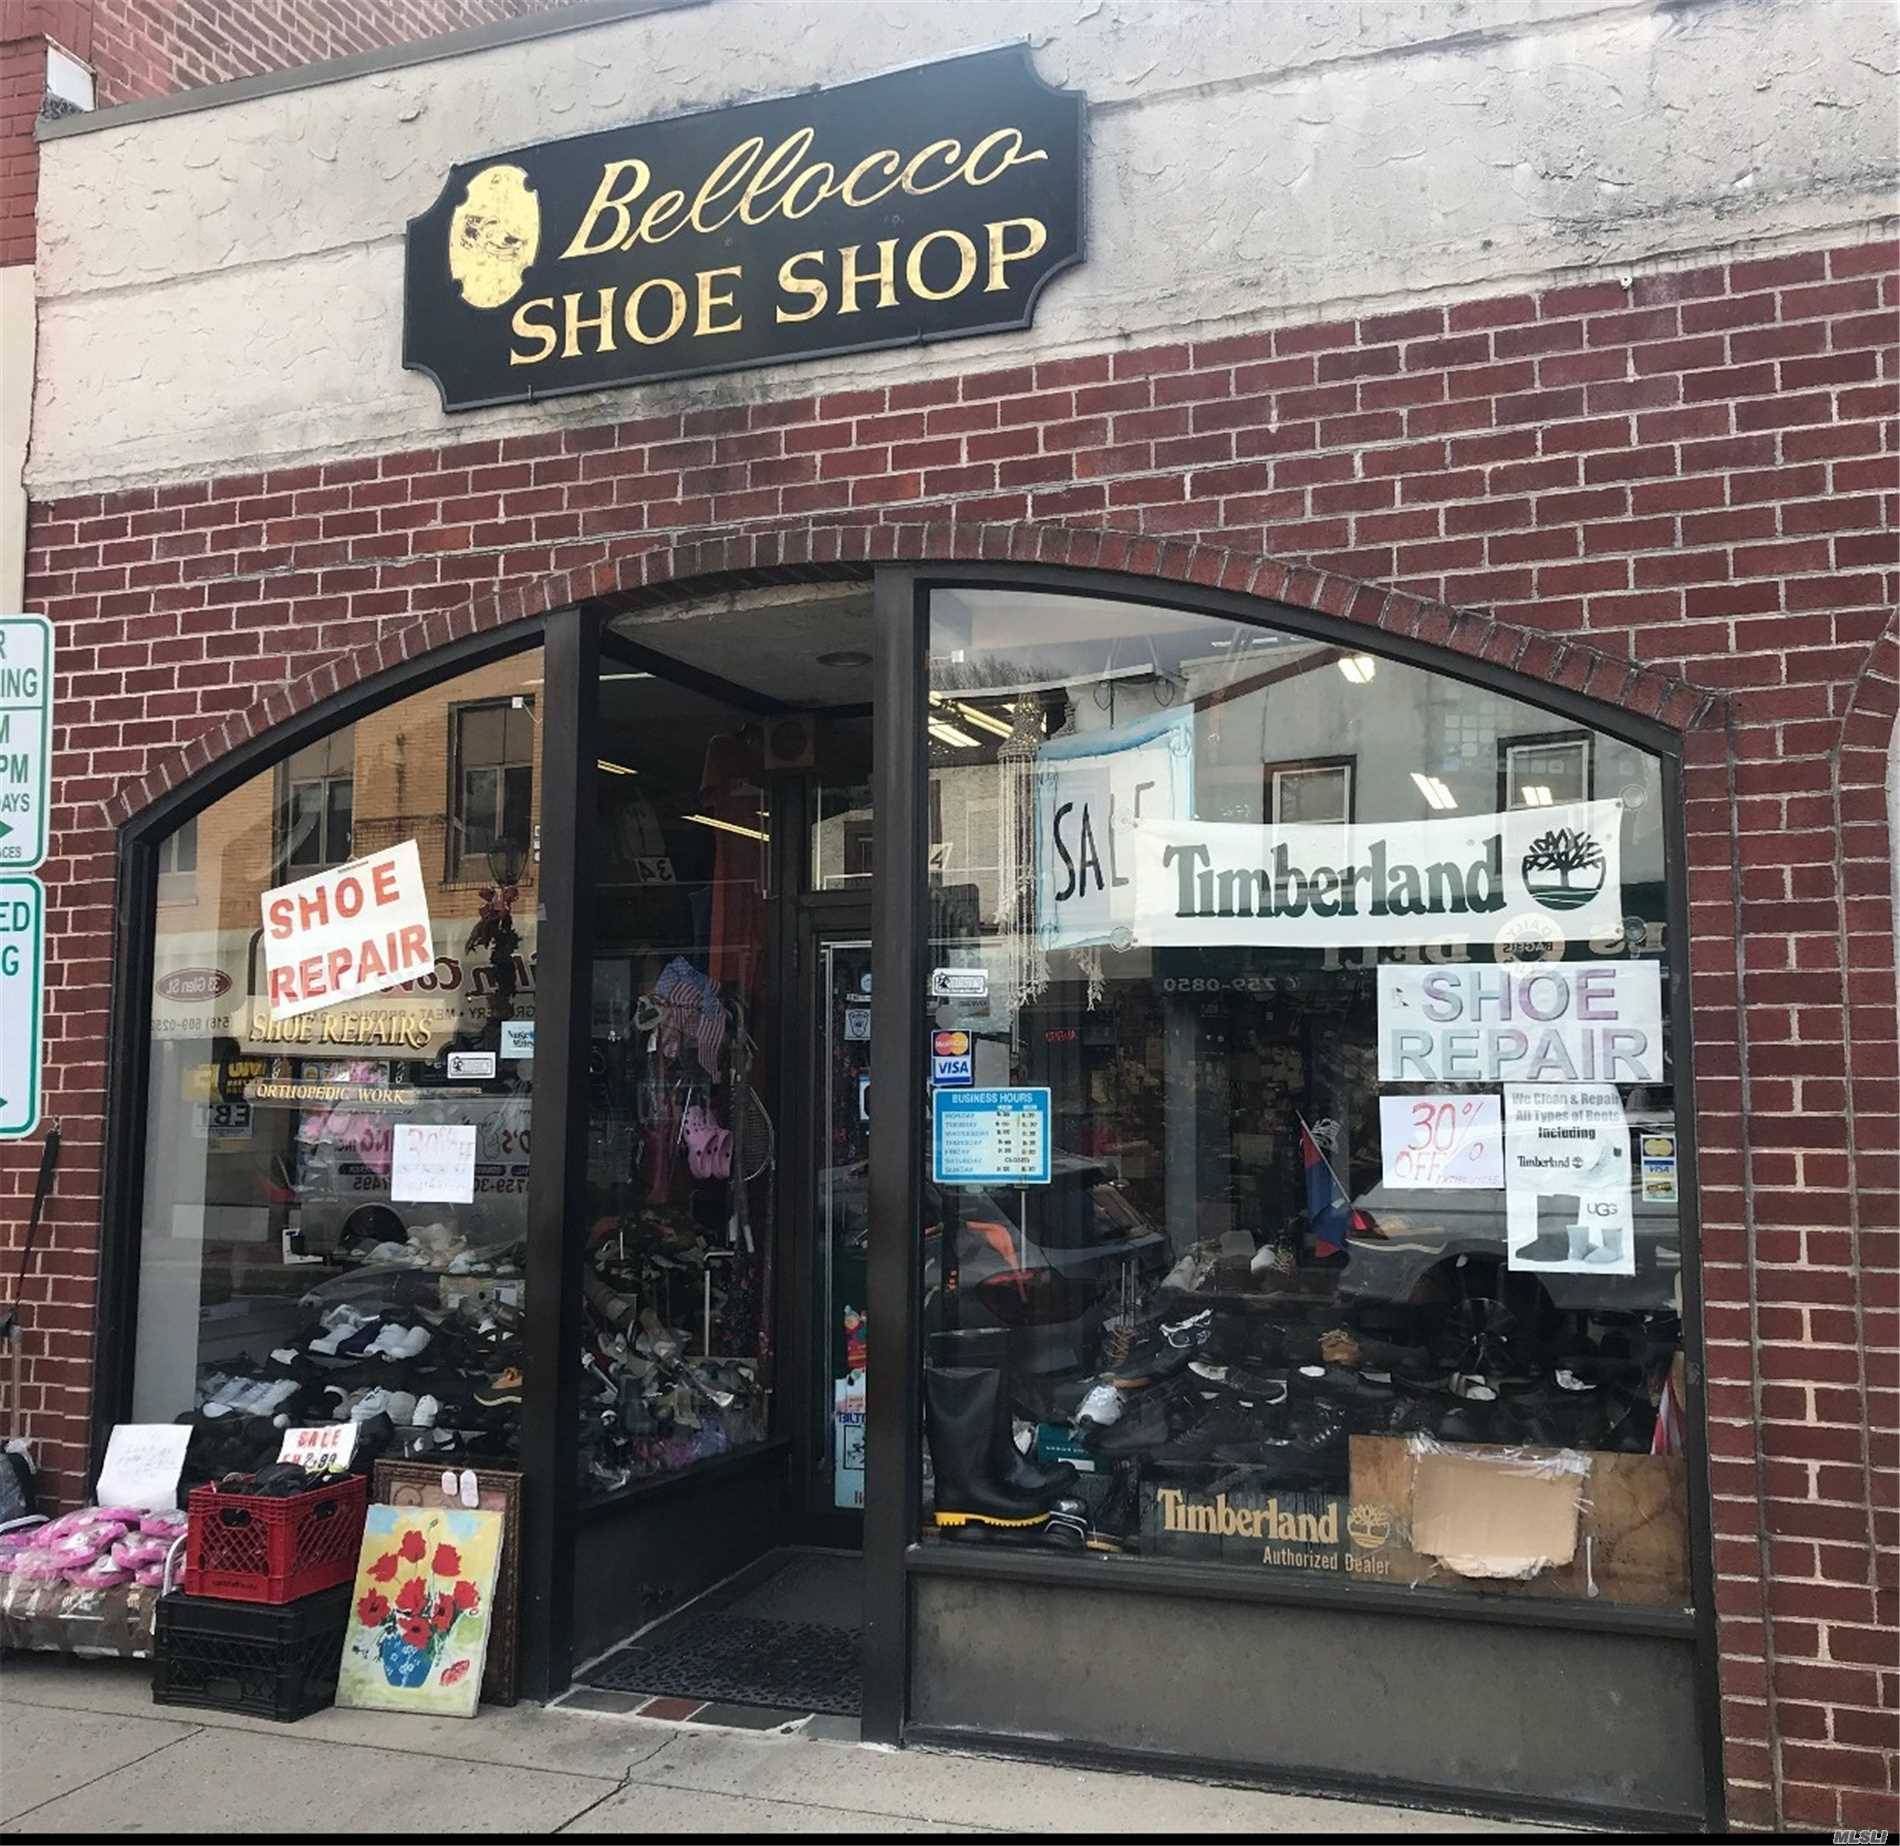 Bellocco Shoe Shop Repair Business For Sale.